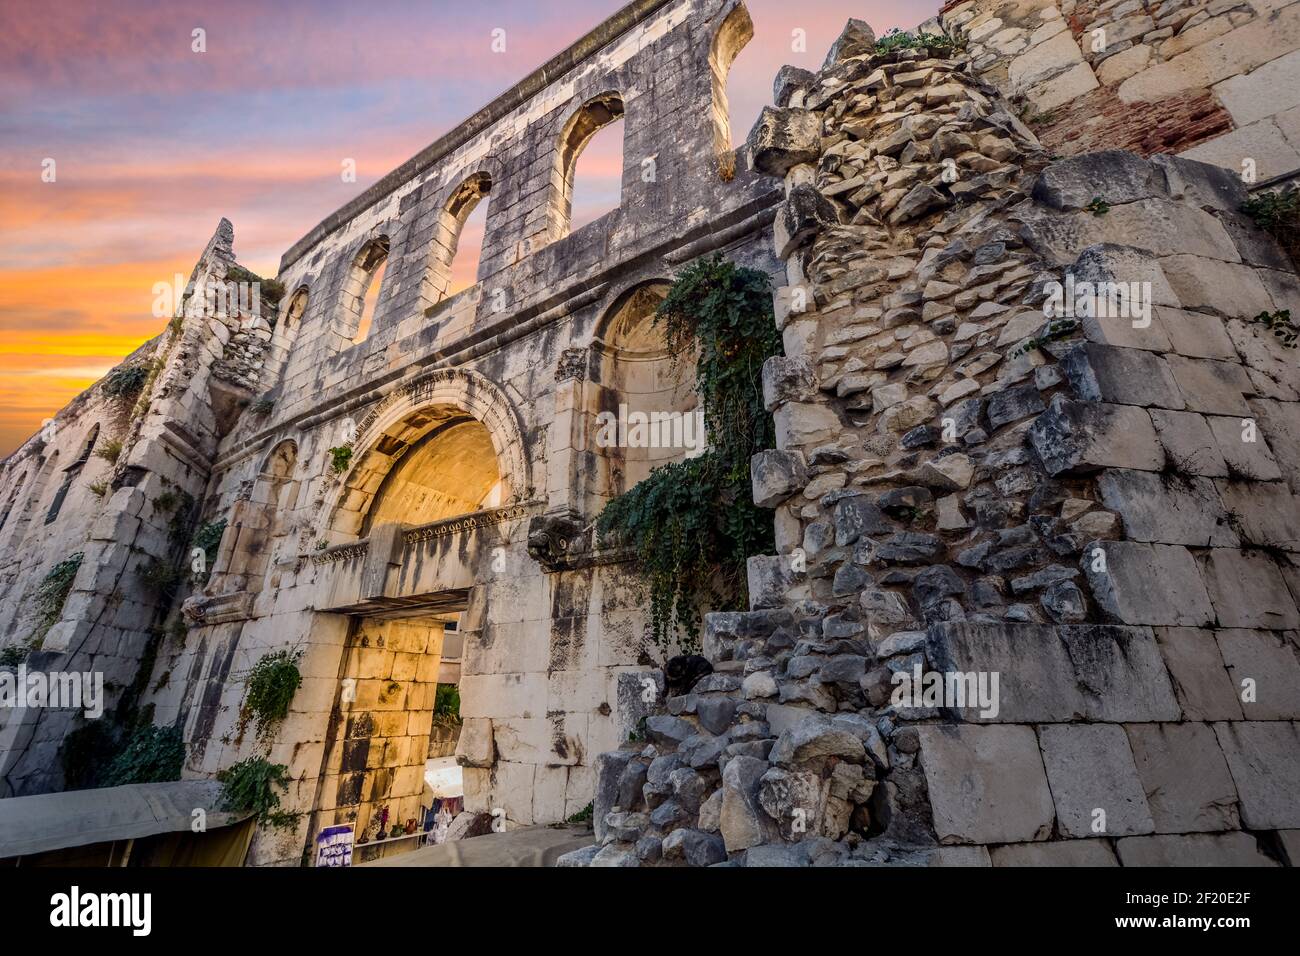 Un gato se encuentra sobre piedras apiladas cerca de la Puerta de Plata del antiguo Palacio del Emperador Diocleciano en las ruinas romanas de la ciudad antigua en Split, Croacia, al atardecer. Foto de stock